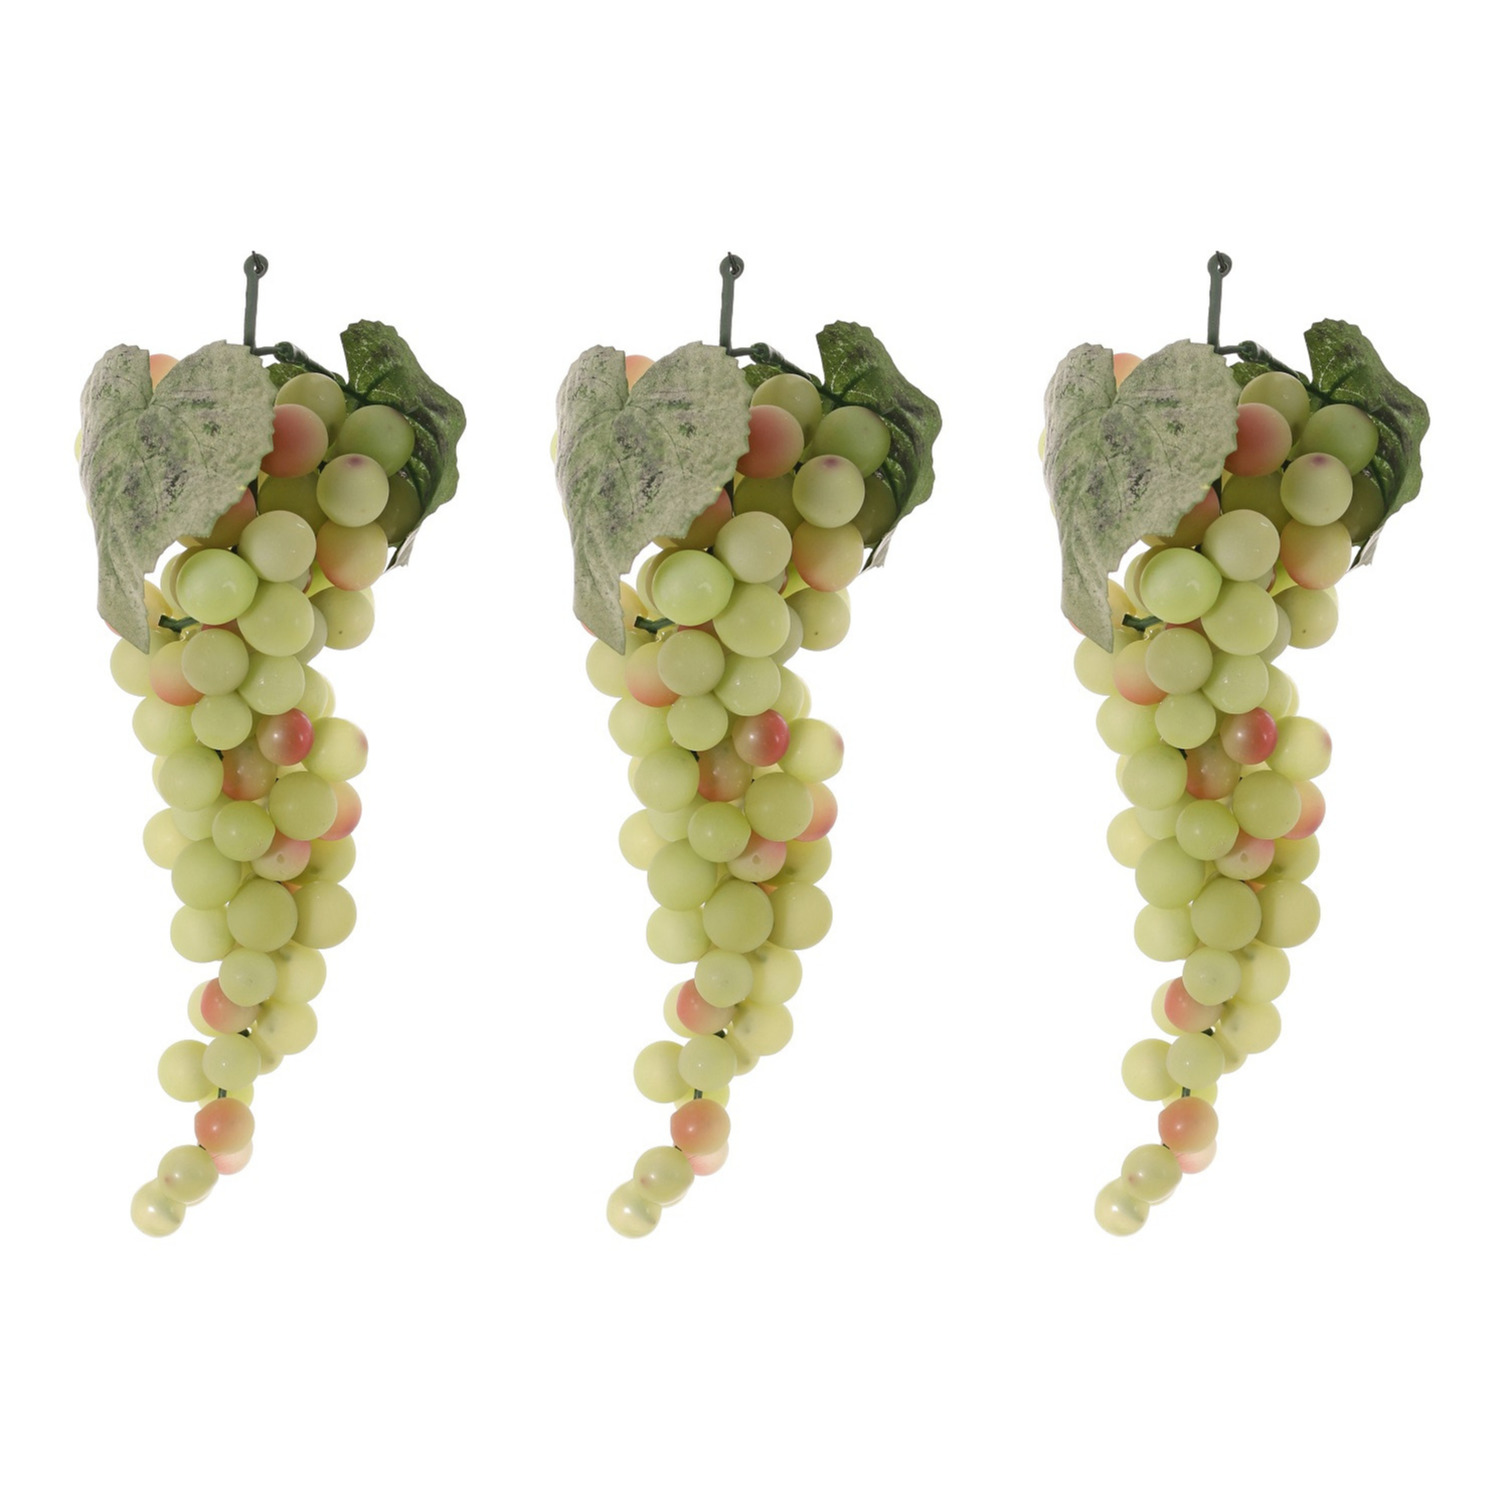 Pakket van 3x stuks witte druiven aan een tros 28 cm namaak fruit